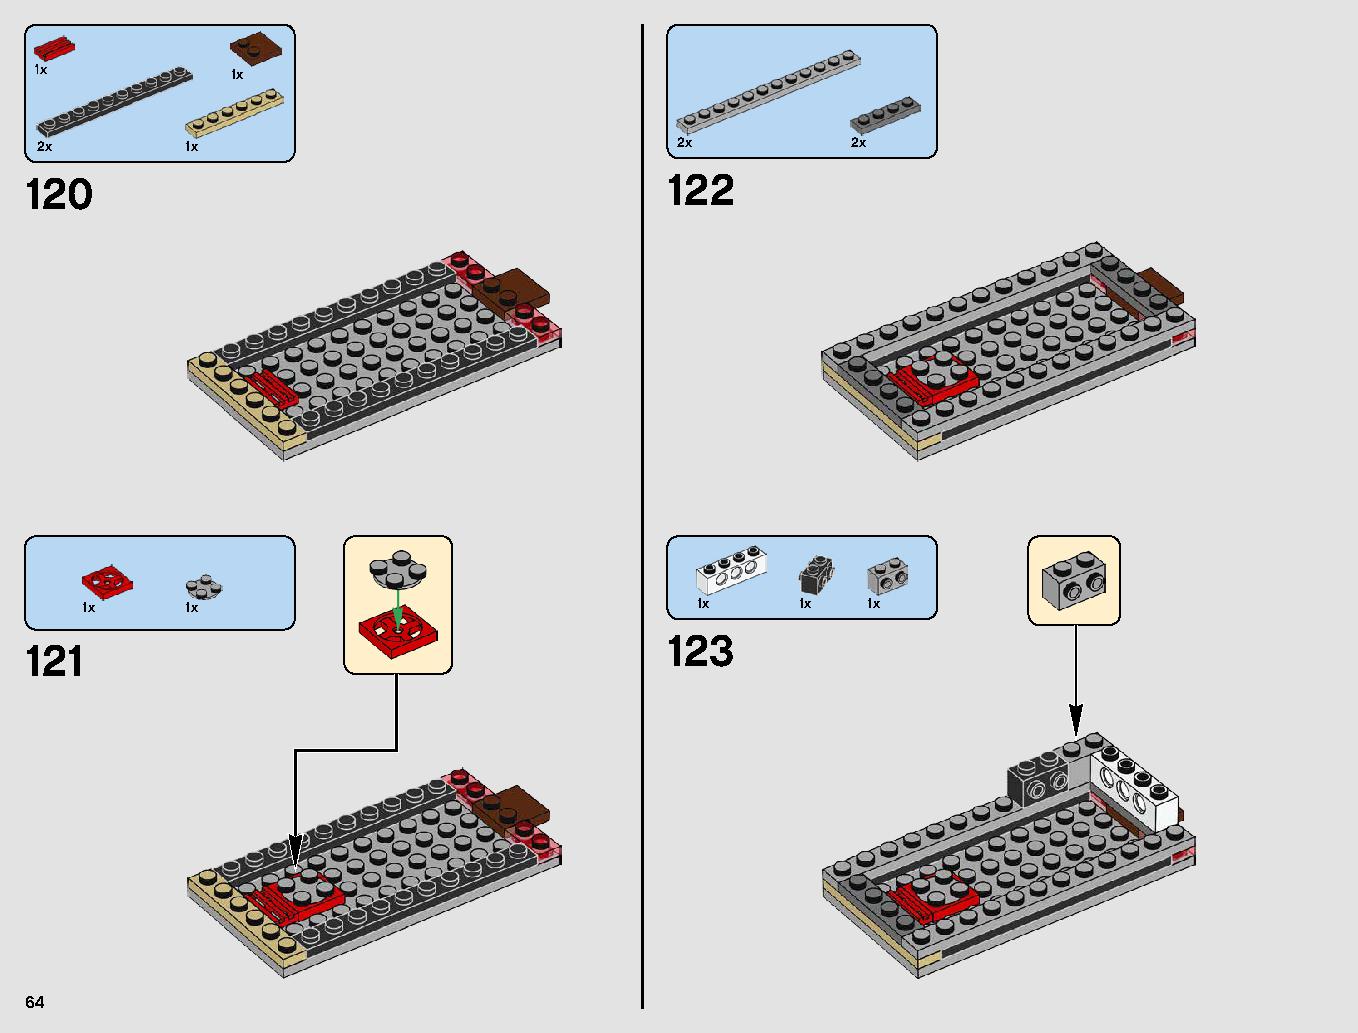 レジスタンス・ボマー 75188 レゴの商品情報 レゴの説明書・組立方法 64 page